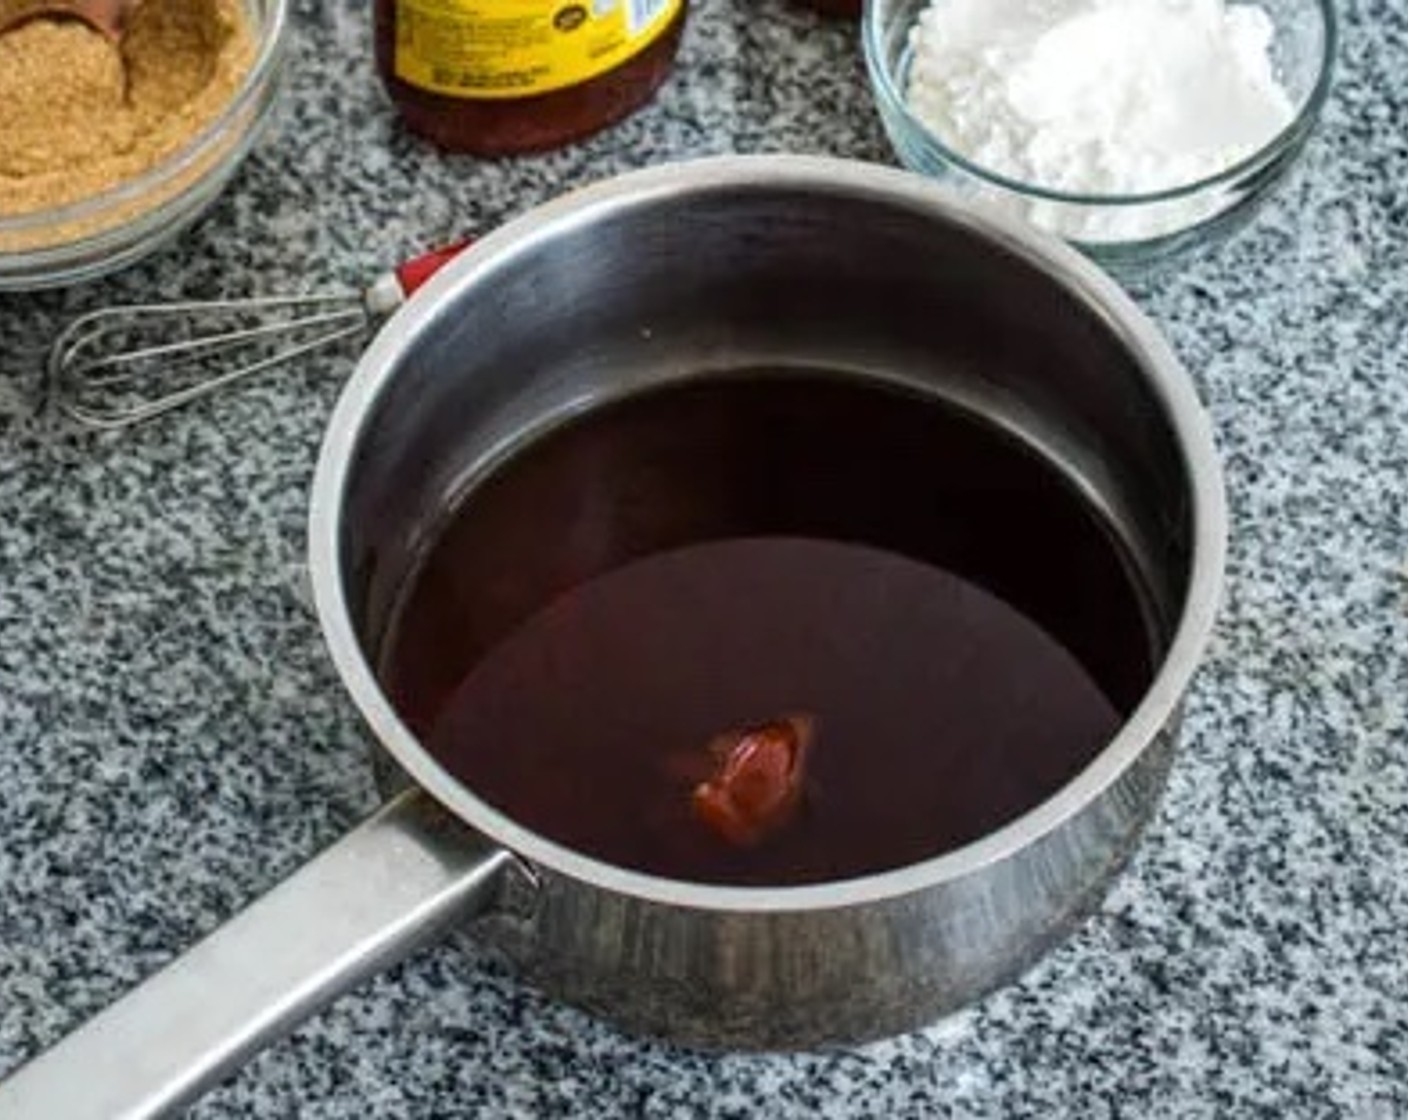 step 1 Prepare the teriyaki sauce by combining Water (1/2 cup), Light Soy Sauce (3 Tbsp), Honey (1 Tbsp), Mirin (1 Tbsp), Brown Sugar (2 Tbsp), Corn Starch (1 1/2 Tbsp), and Sriracha (1/2 Tbsp).